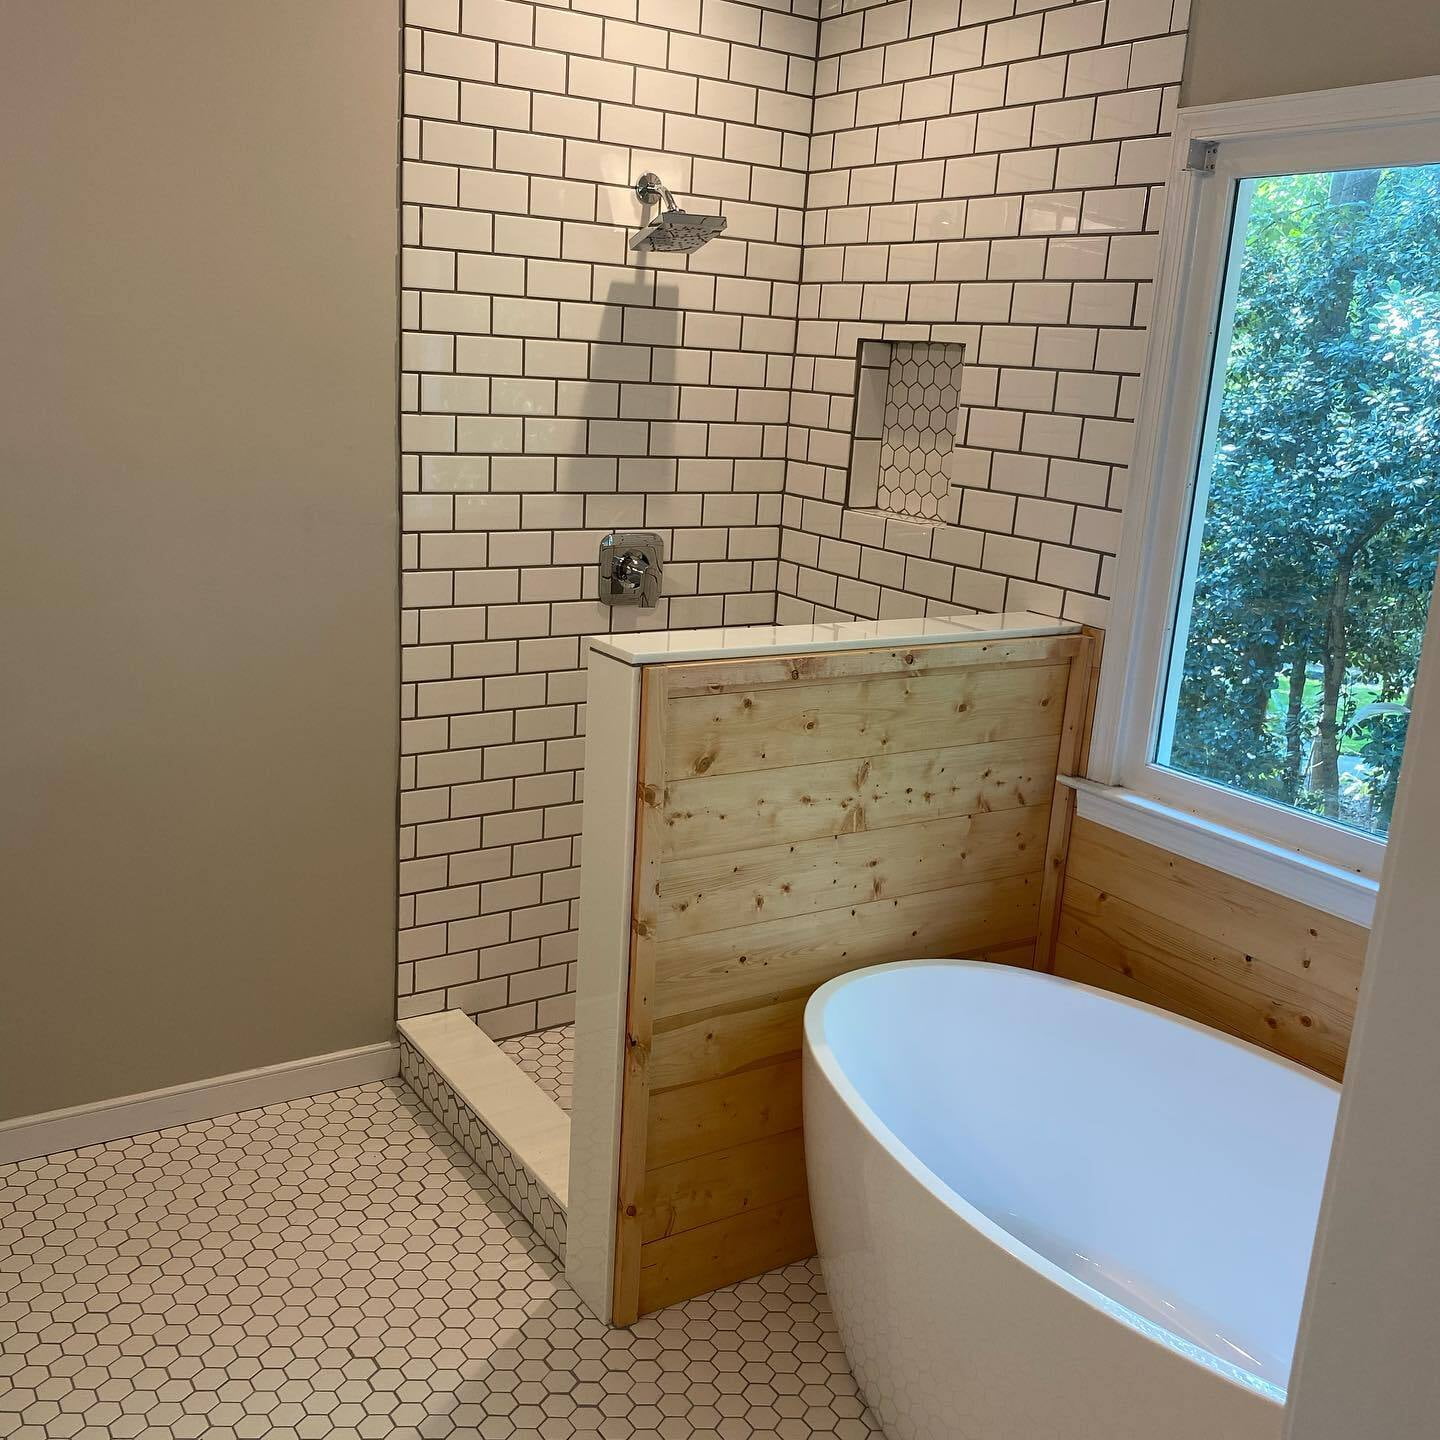 Bathroom Remodel, Shower Tile, and Soaking Tub.